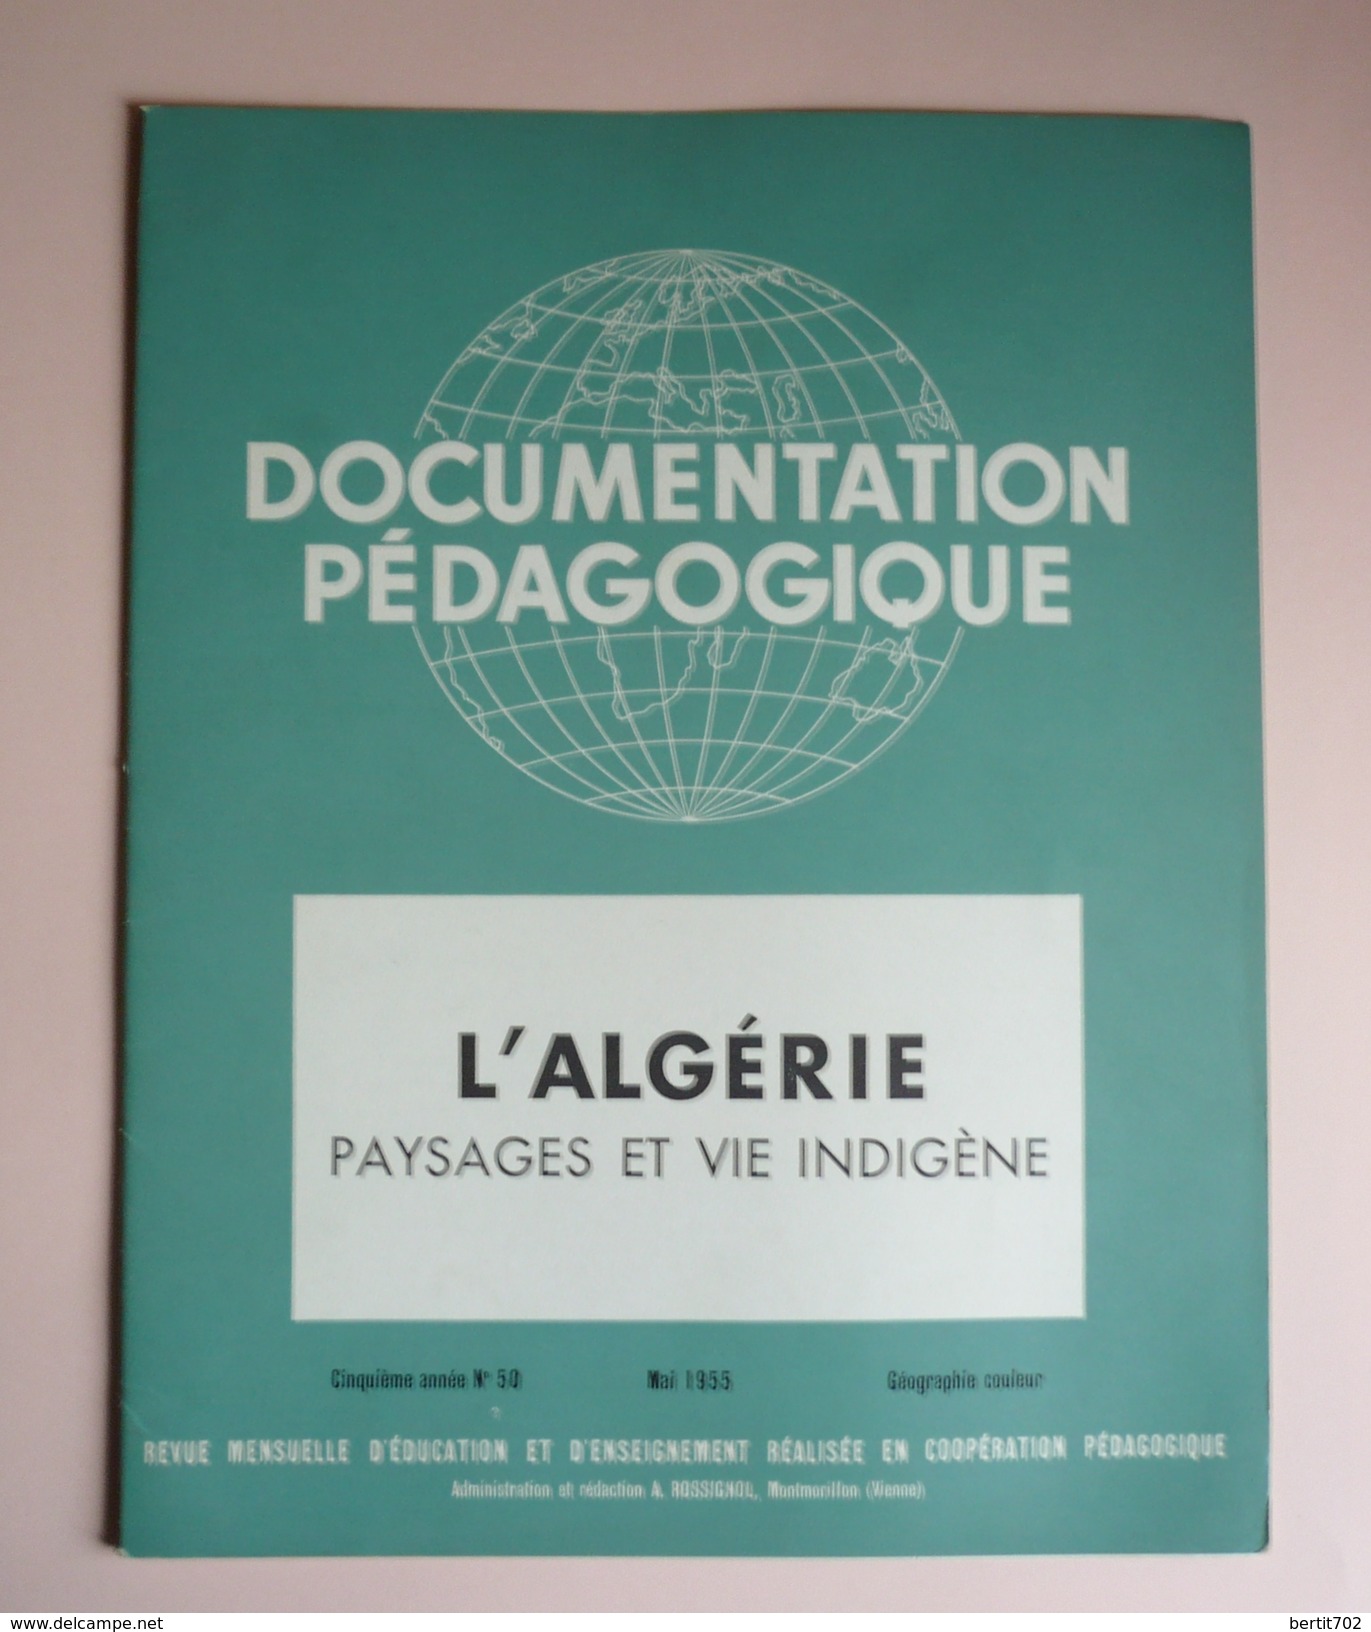 DOCUMENTATION PEDAGOGIQUE MAI 1955  - L'ALGERIE Paysages Et Vie Indigène - 8 PLANCHES COULEUR 27 X 21 - Geographie